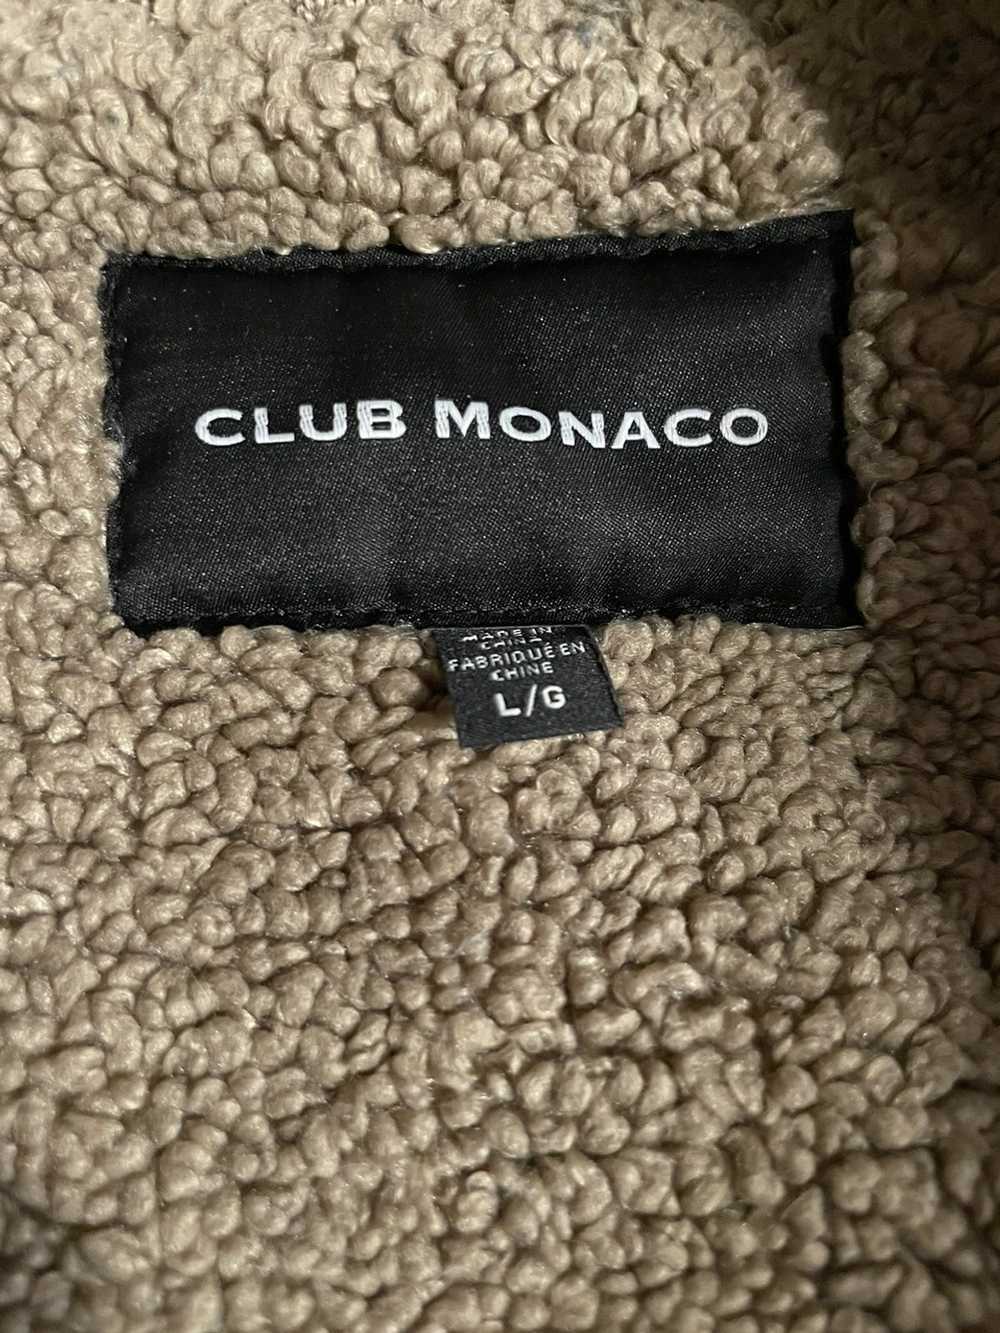 Club Monaco Club Monaco Faux Fur Jacket - image 4